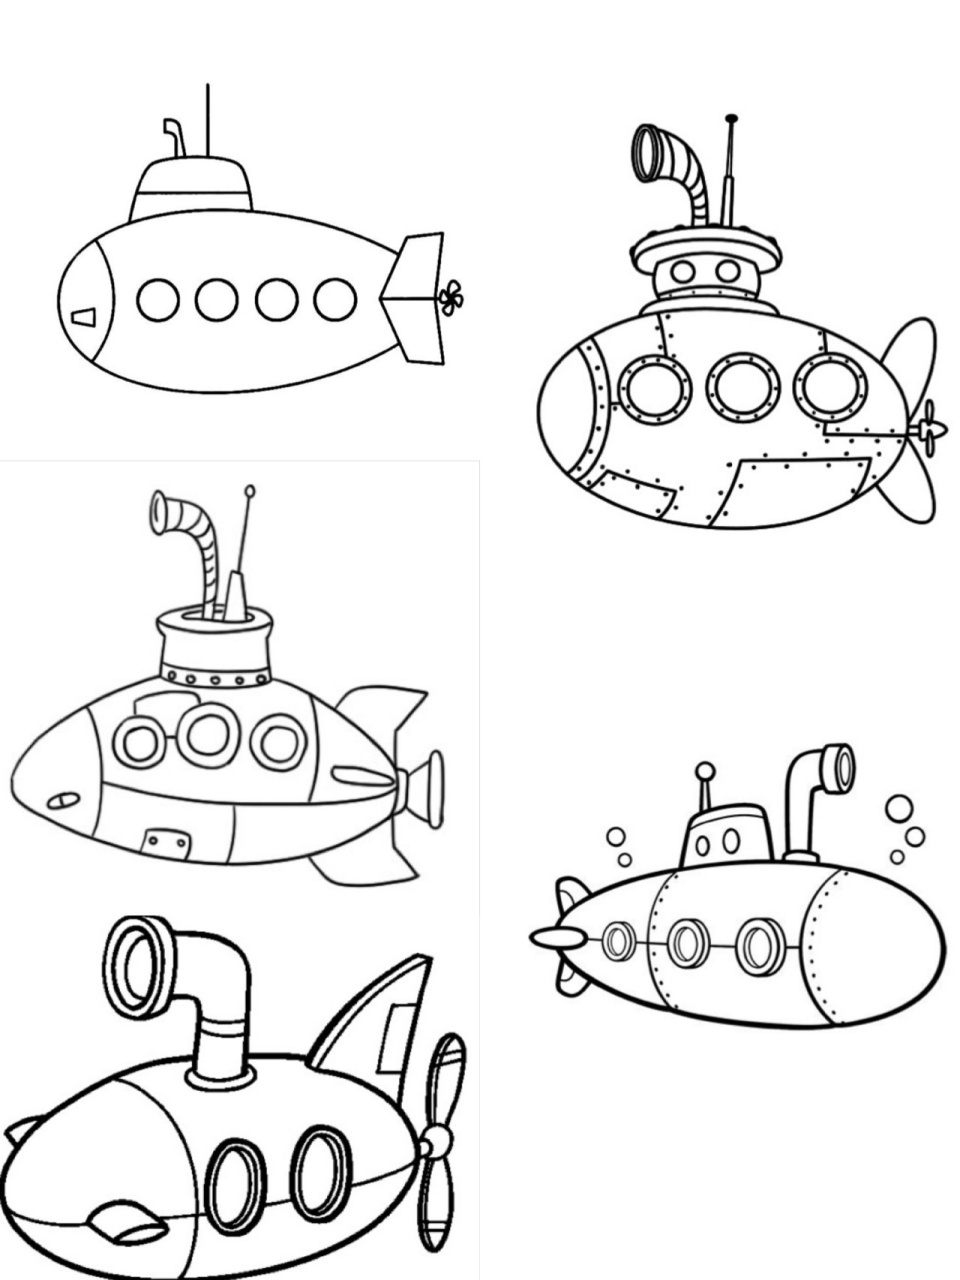 核潜艇简笔画 军用图片